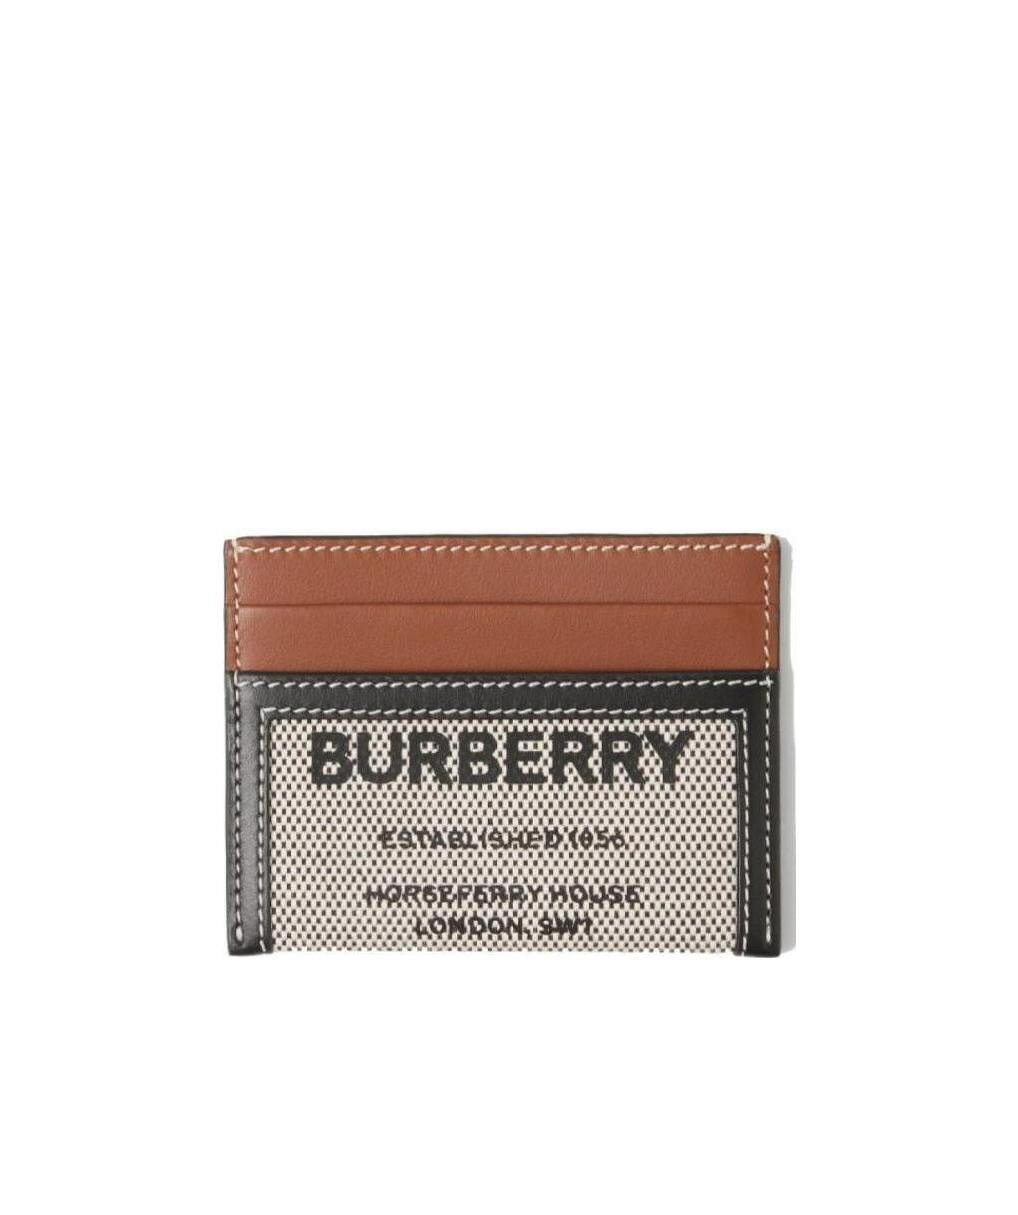 (海外訂貨)(Little bee小蜜蜂精品)BURBERRY 拼接LOGO卡包 卡夾 (沒有發的款式可以截圖私訊)